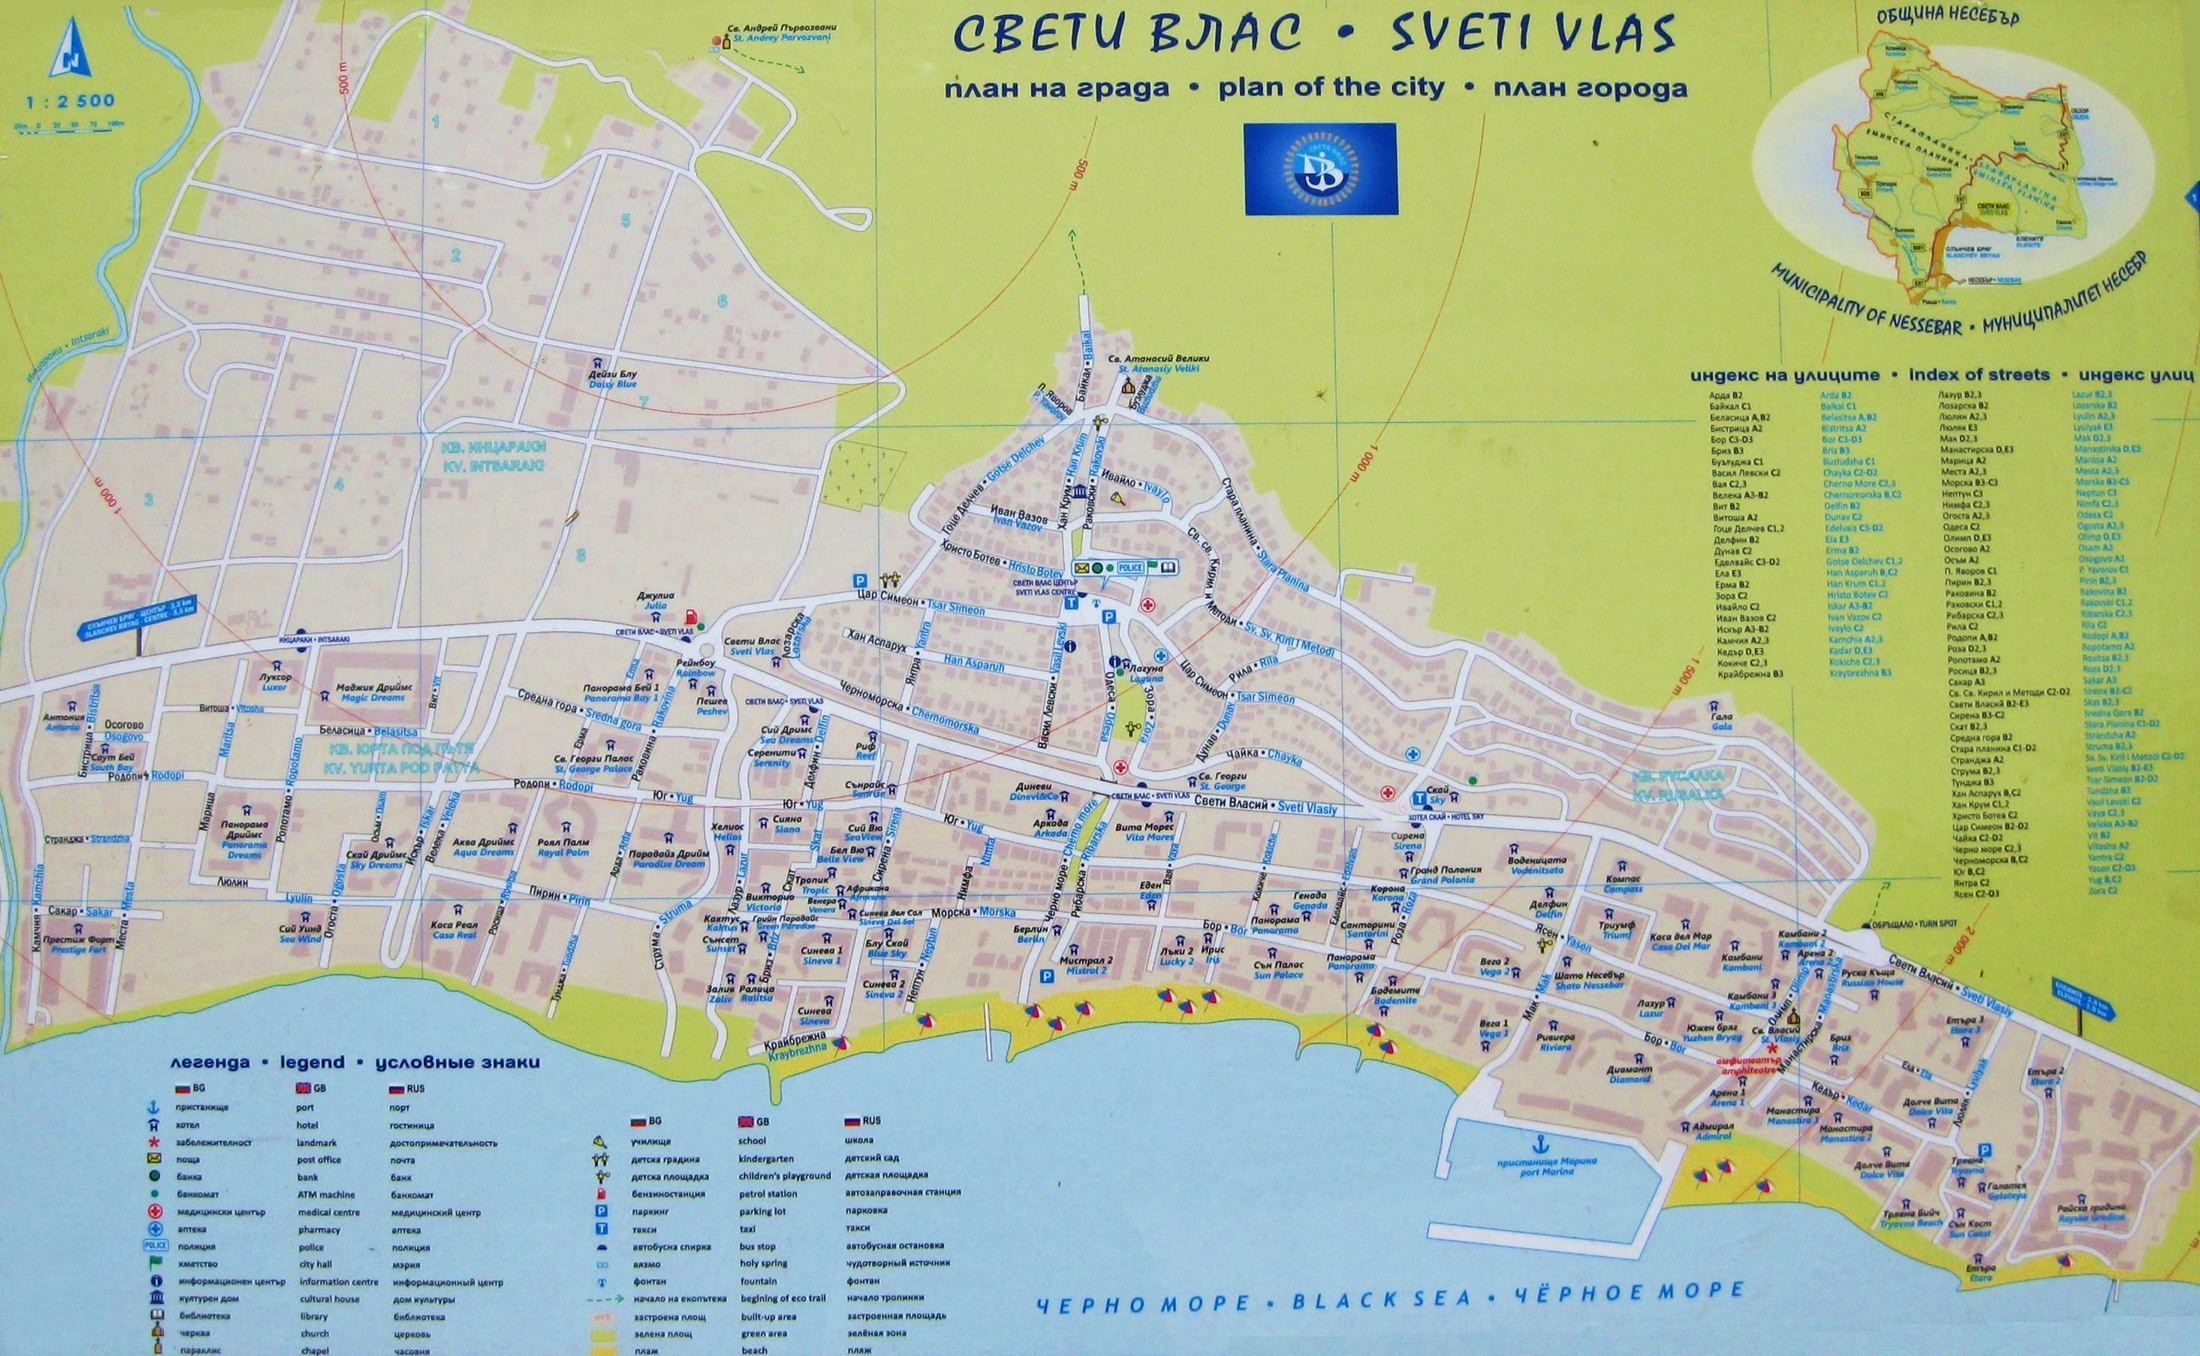 подробная карта святого власа с улицами и отелями